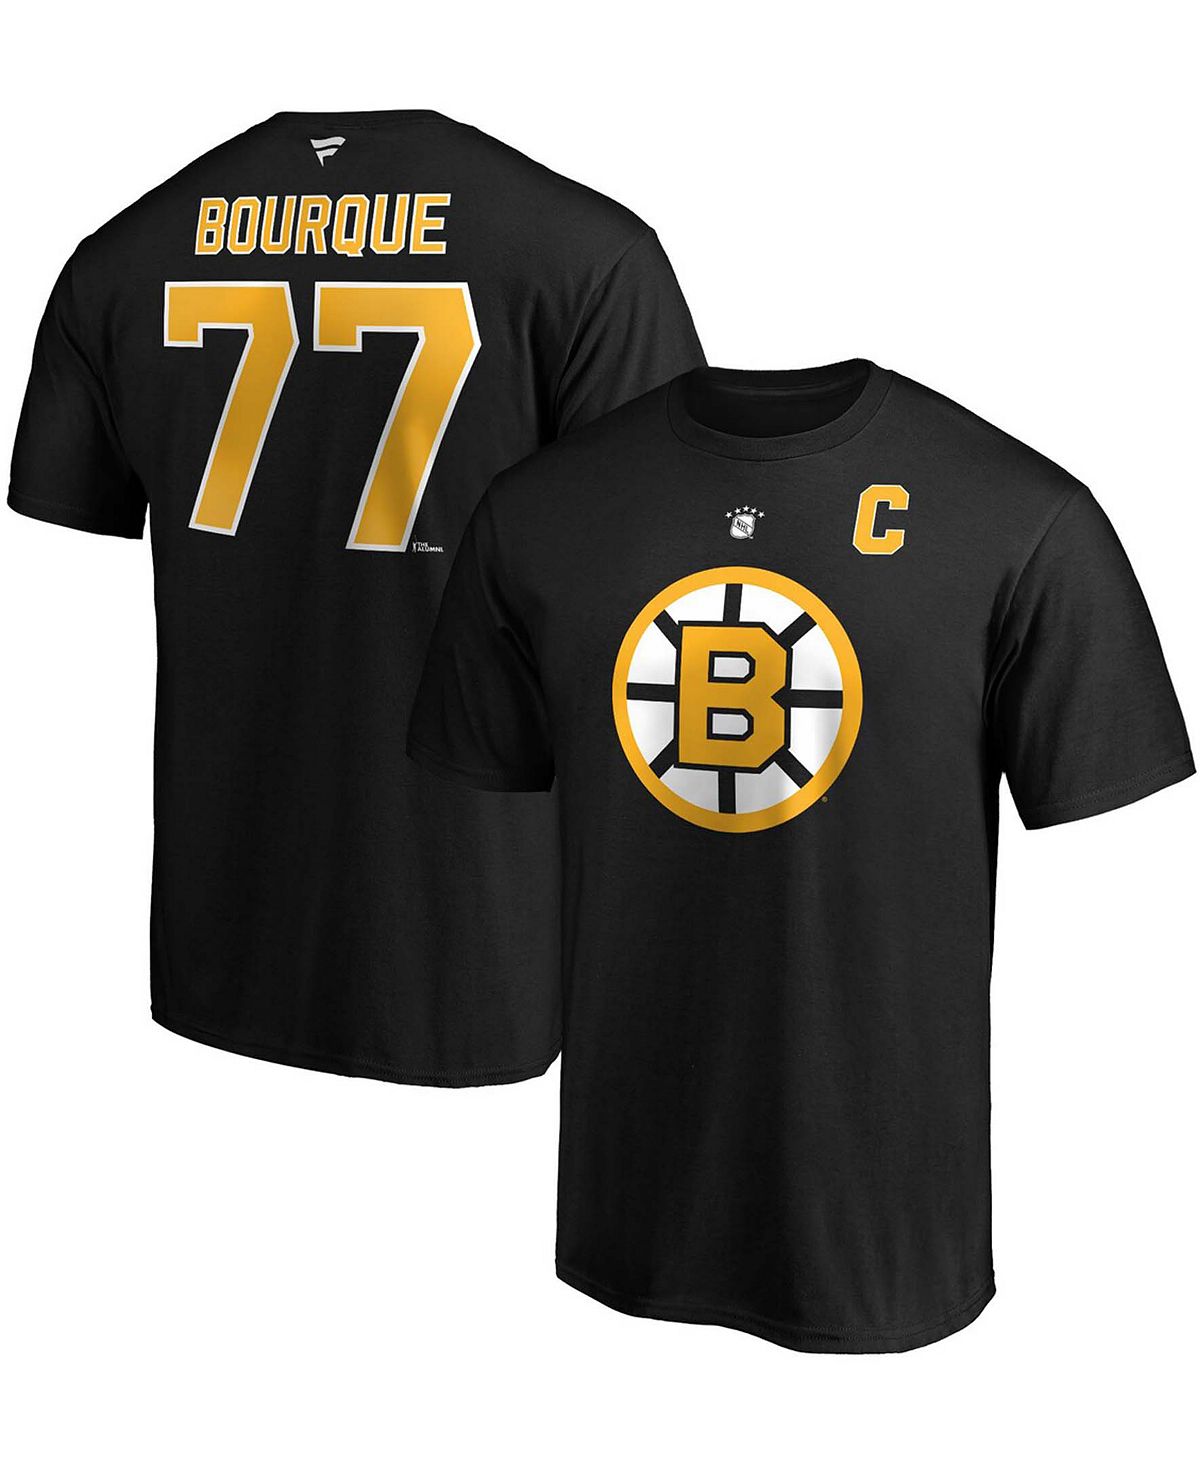 Мужская футболка ray bourque black boston bruins authentic stack с именем и номером игрока на пенсии Fanatics, черный